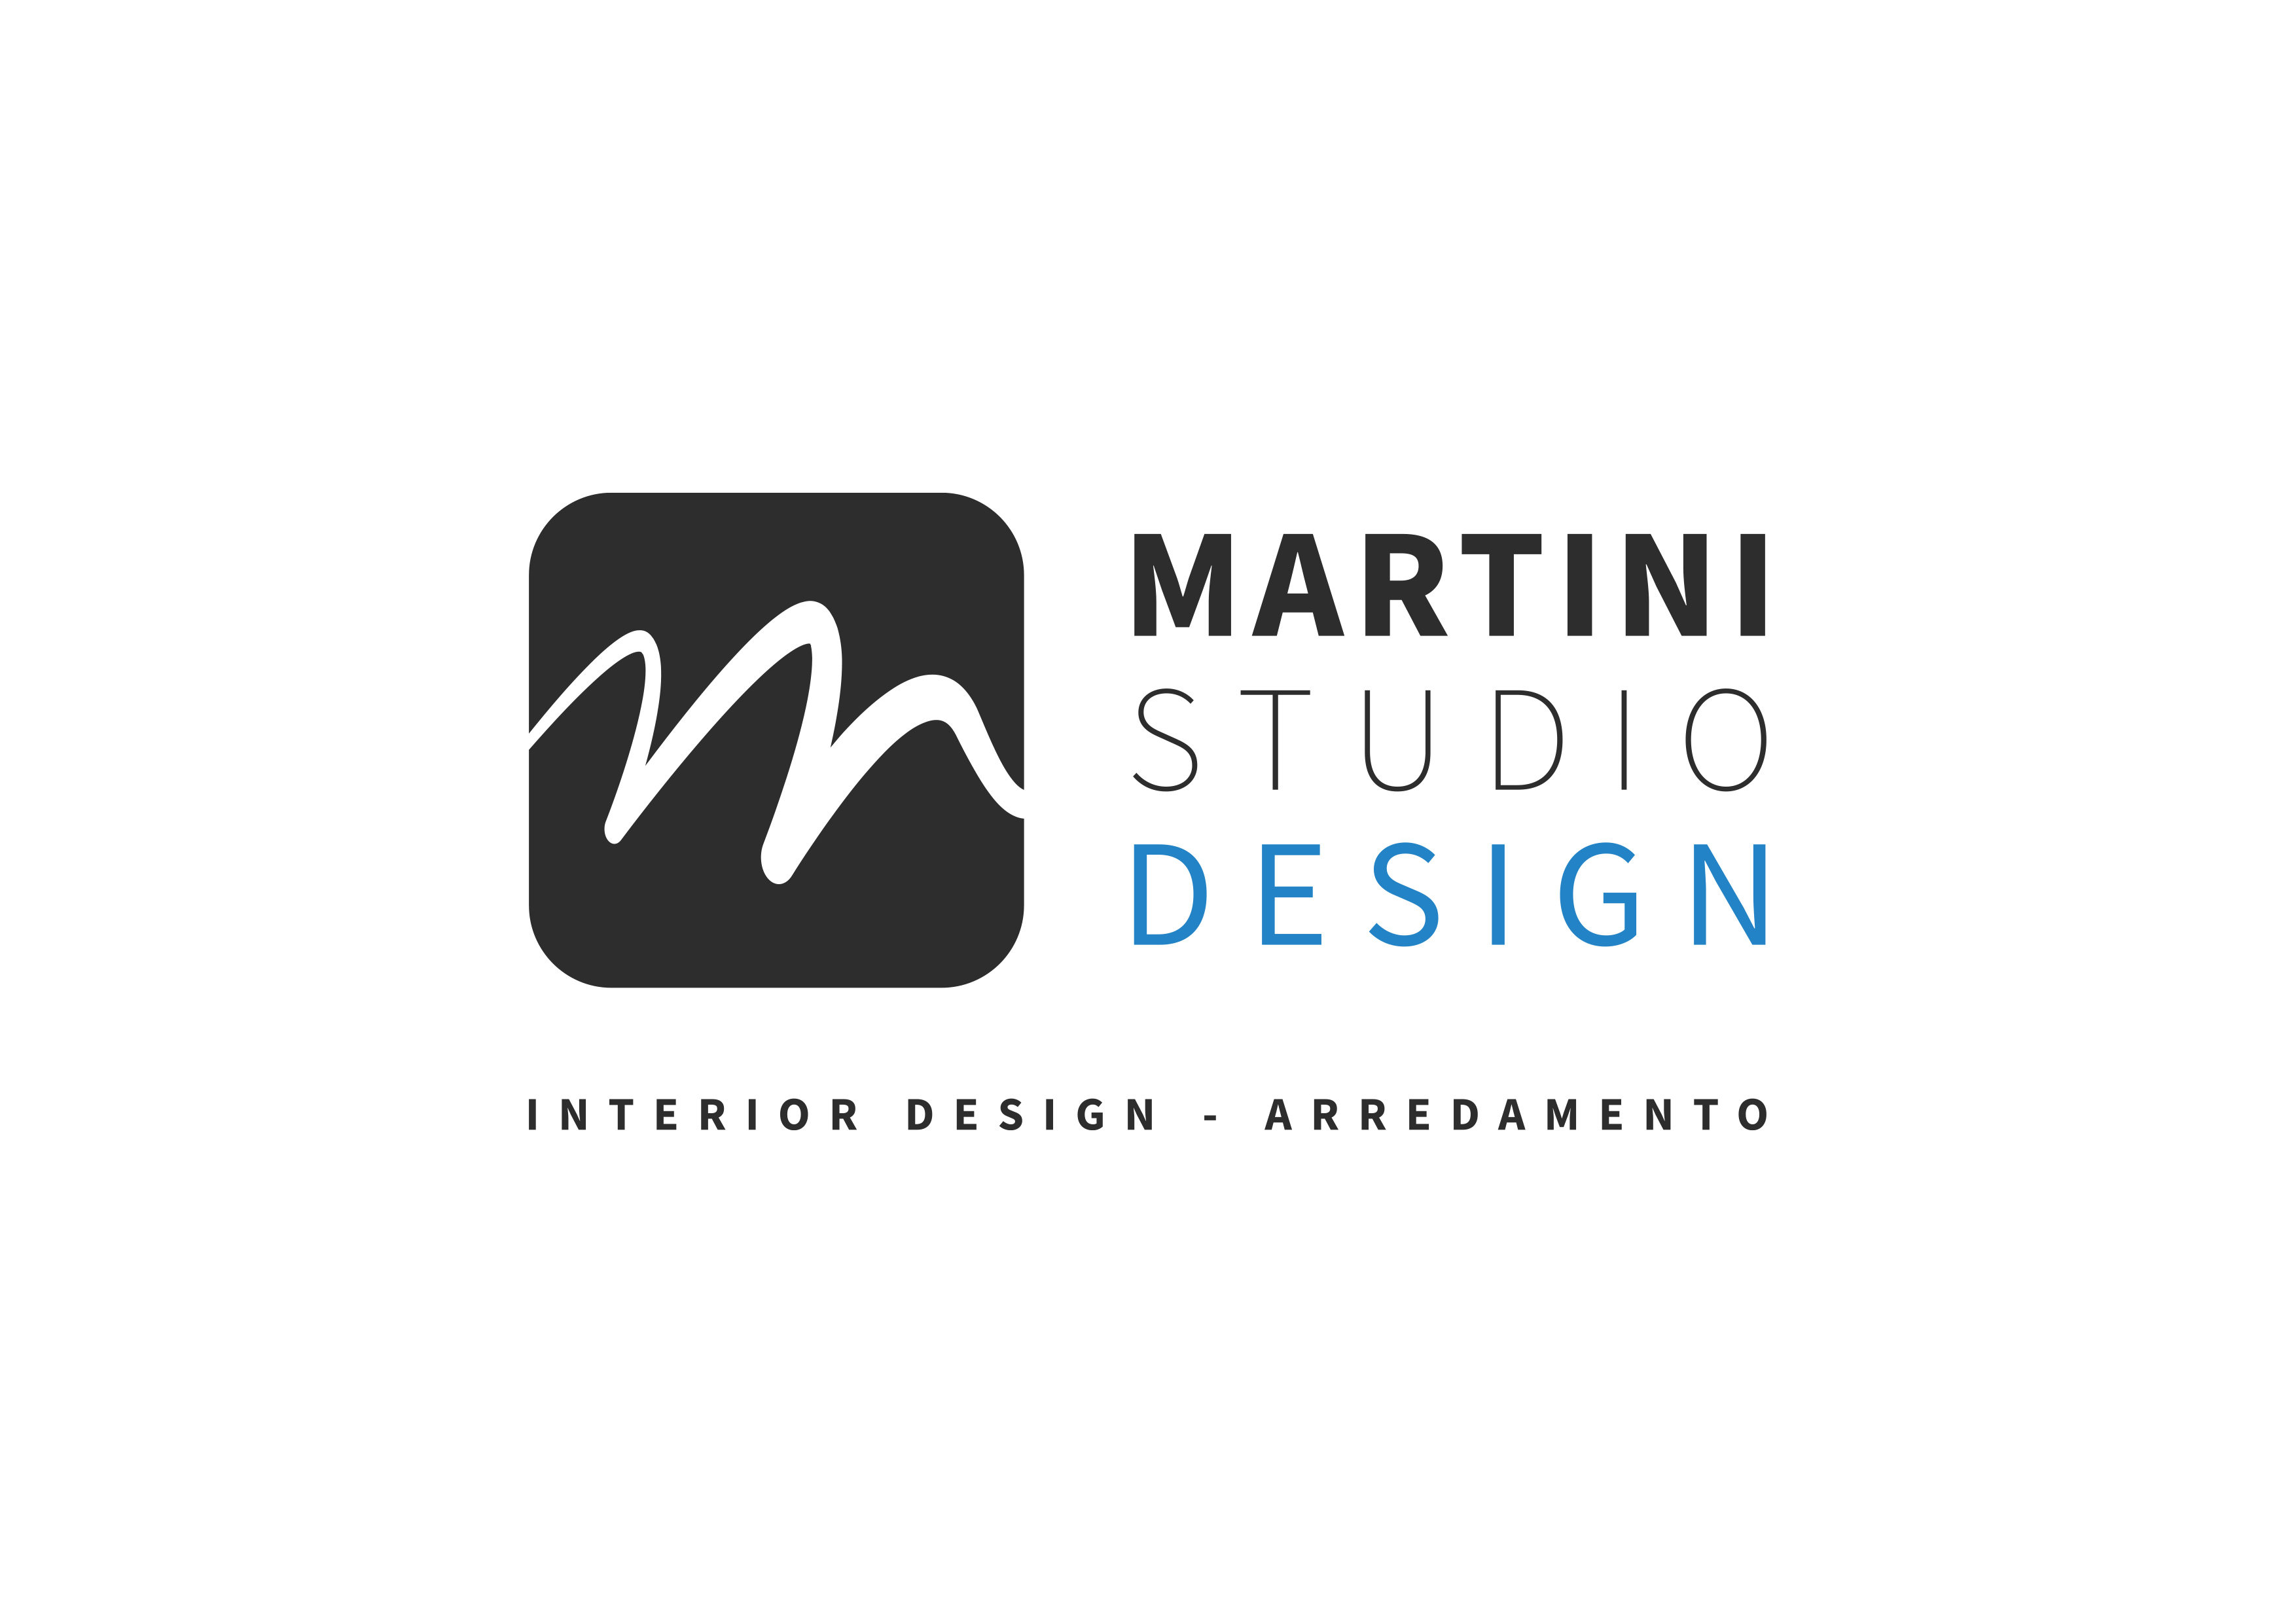 Martini Studio Design – Interior Design / Arredamento di interni – Bientina